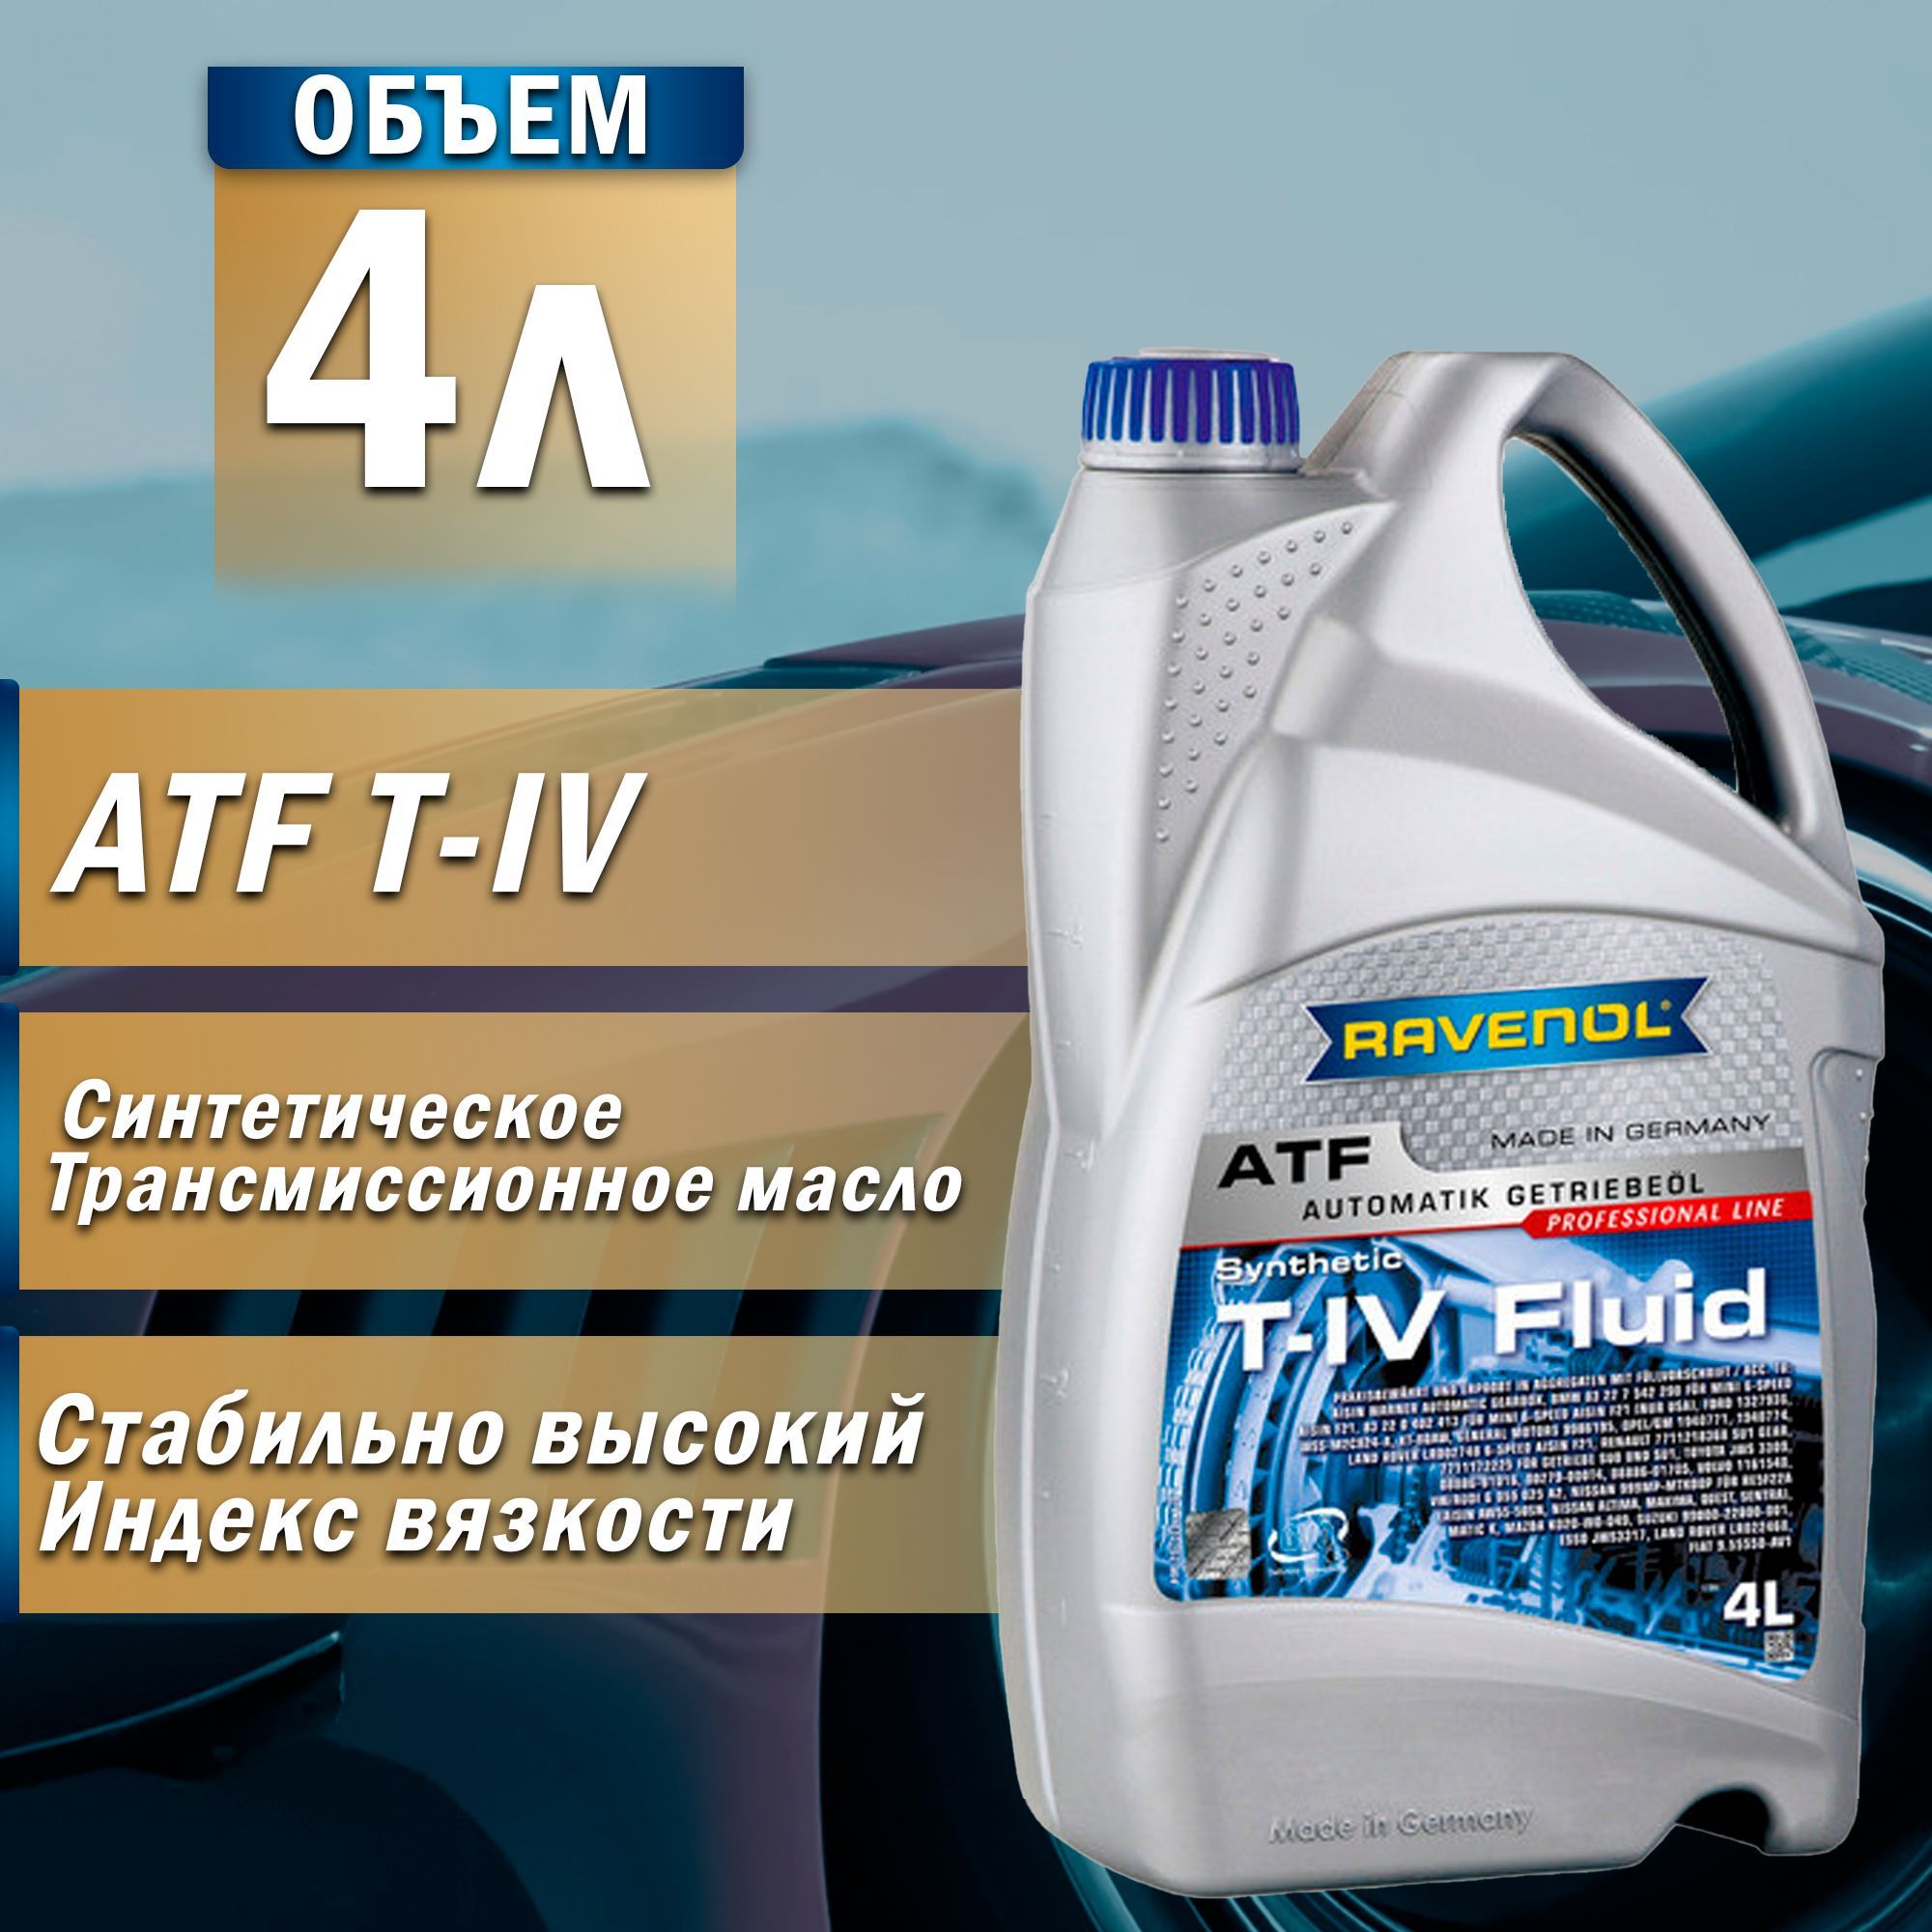 Рансмиссионное масло Ravenol DCT_DSG lv Fluid (4л). ATF+4 Fluid аналоги. Ravenol ATF T-IV Fluid 4л. ATF Type j2/s Fluid 4л.